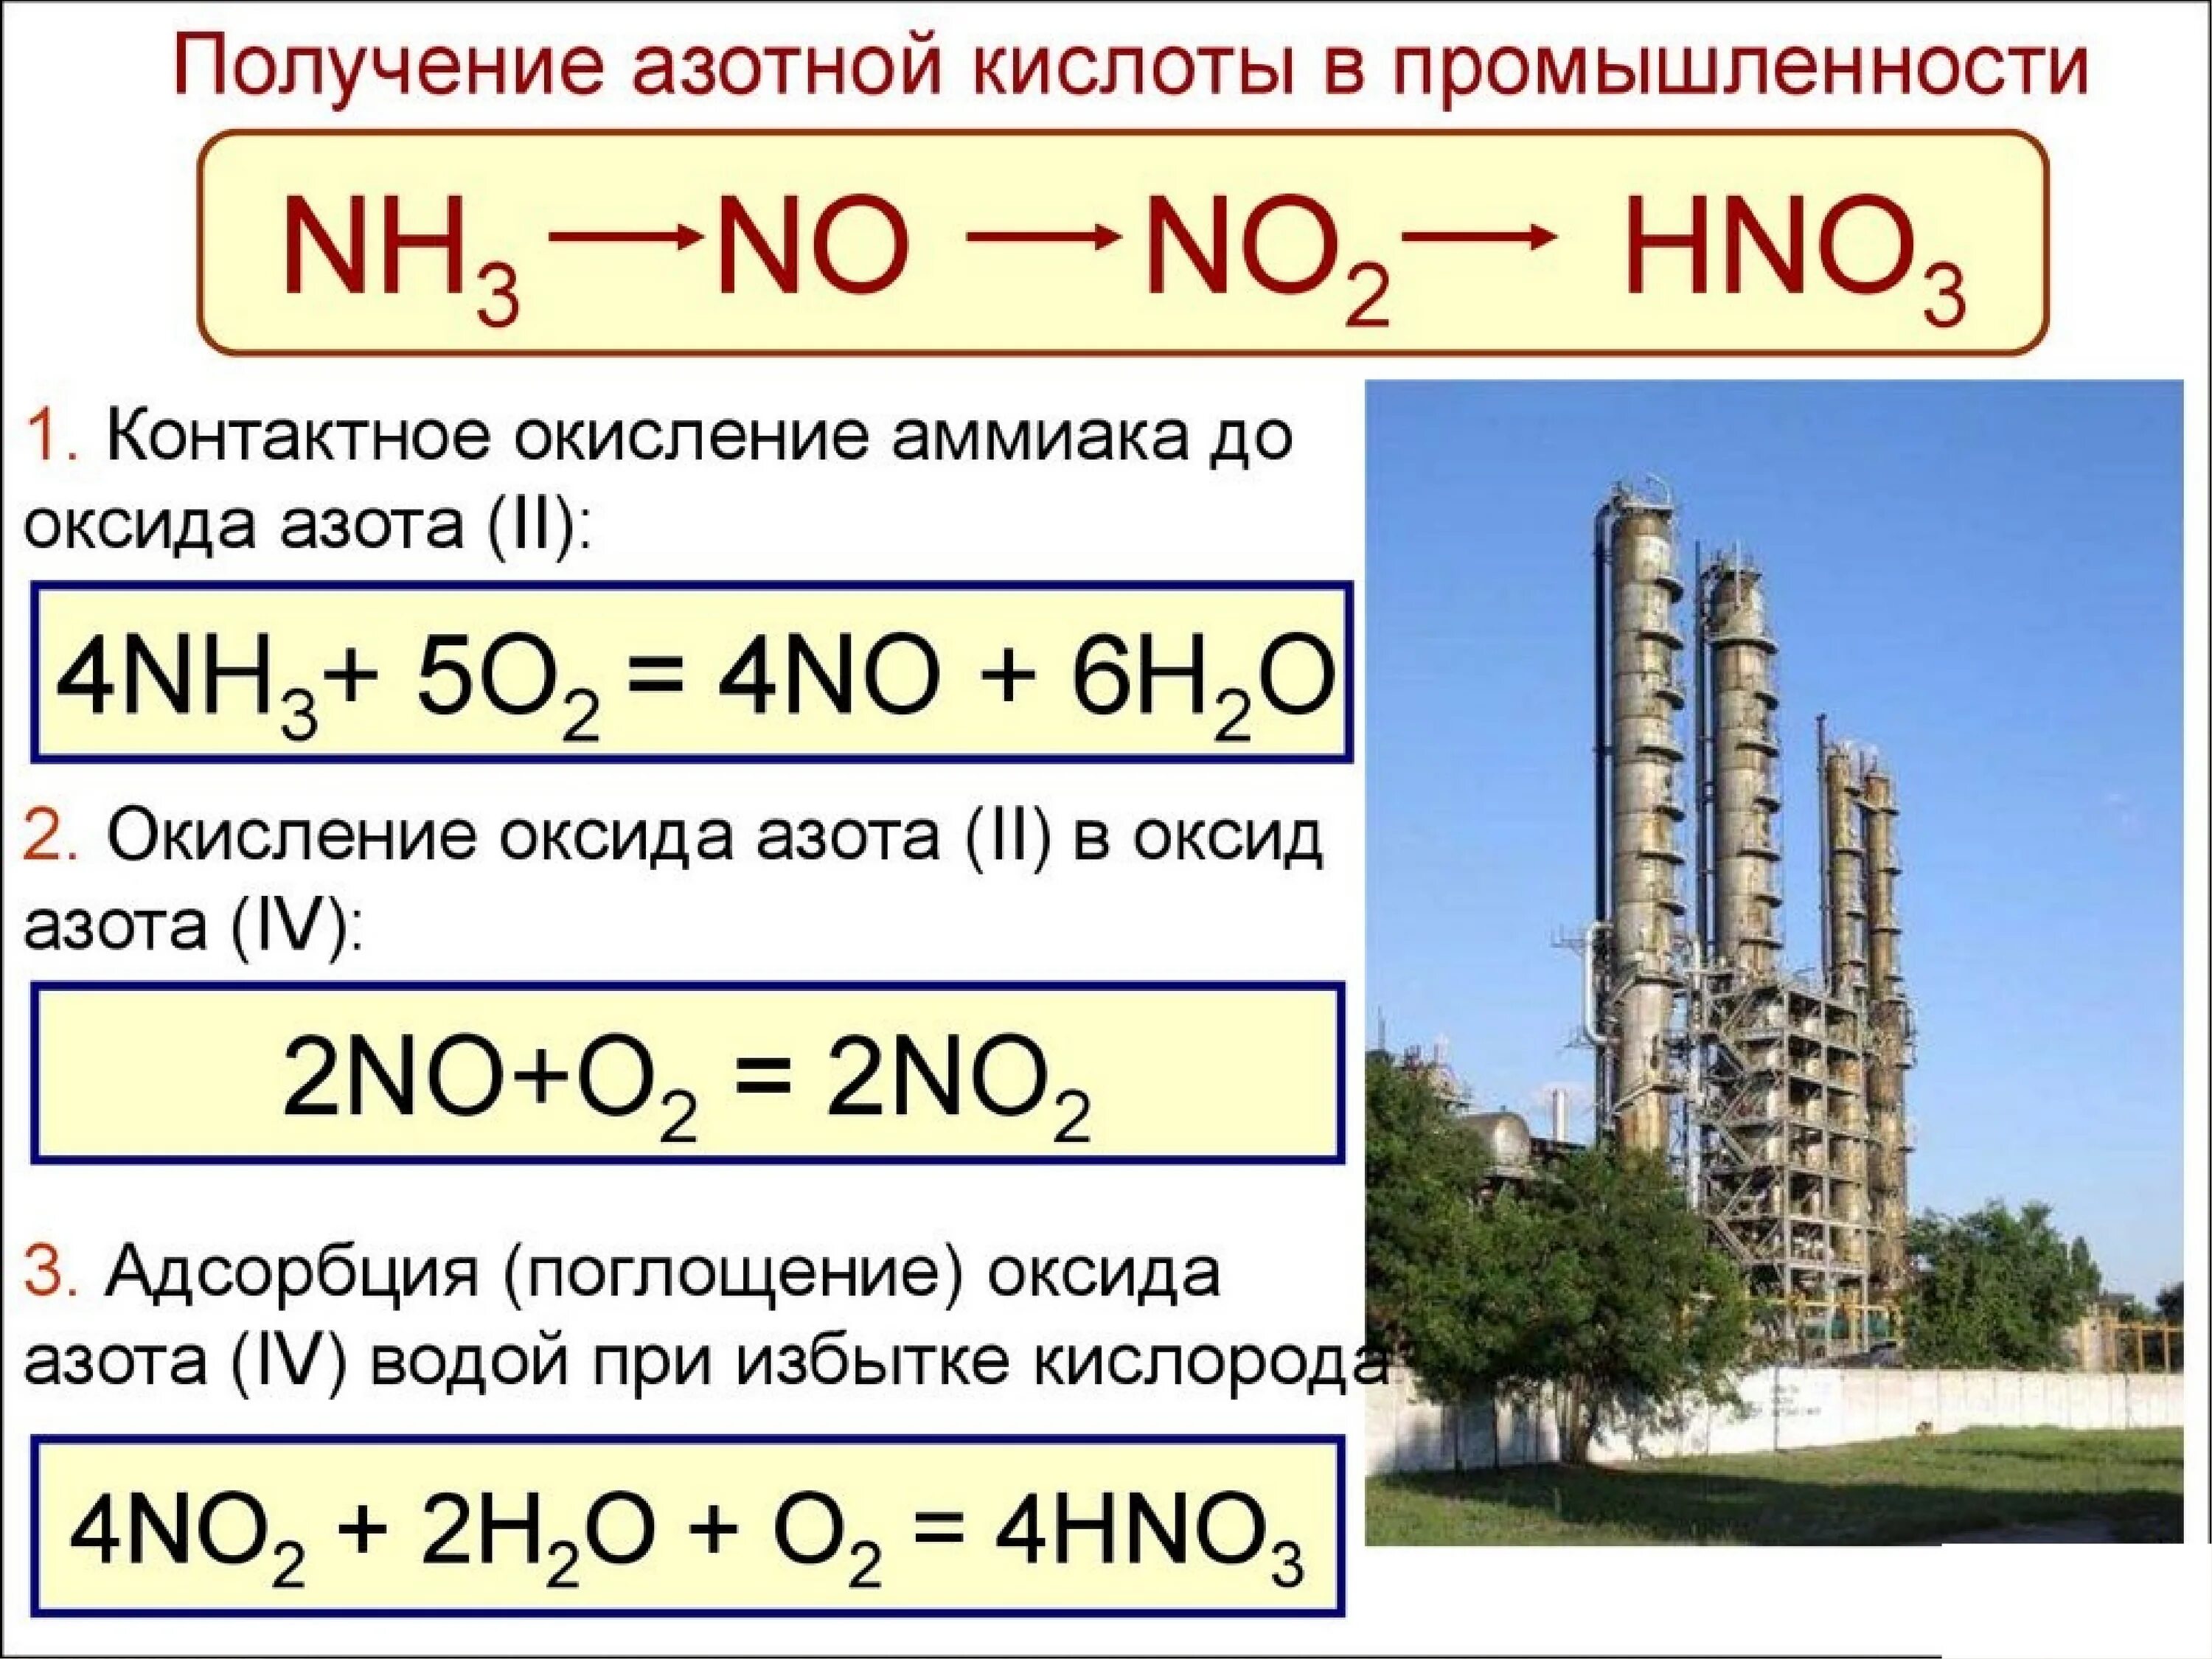 Naco3 hno3. Получение азотной кислоты из аммиака. Как из аммиака получить оксид азота 2. Как из аммиака получить азотную кислоту. Получение азотной кислоты из no2.